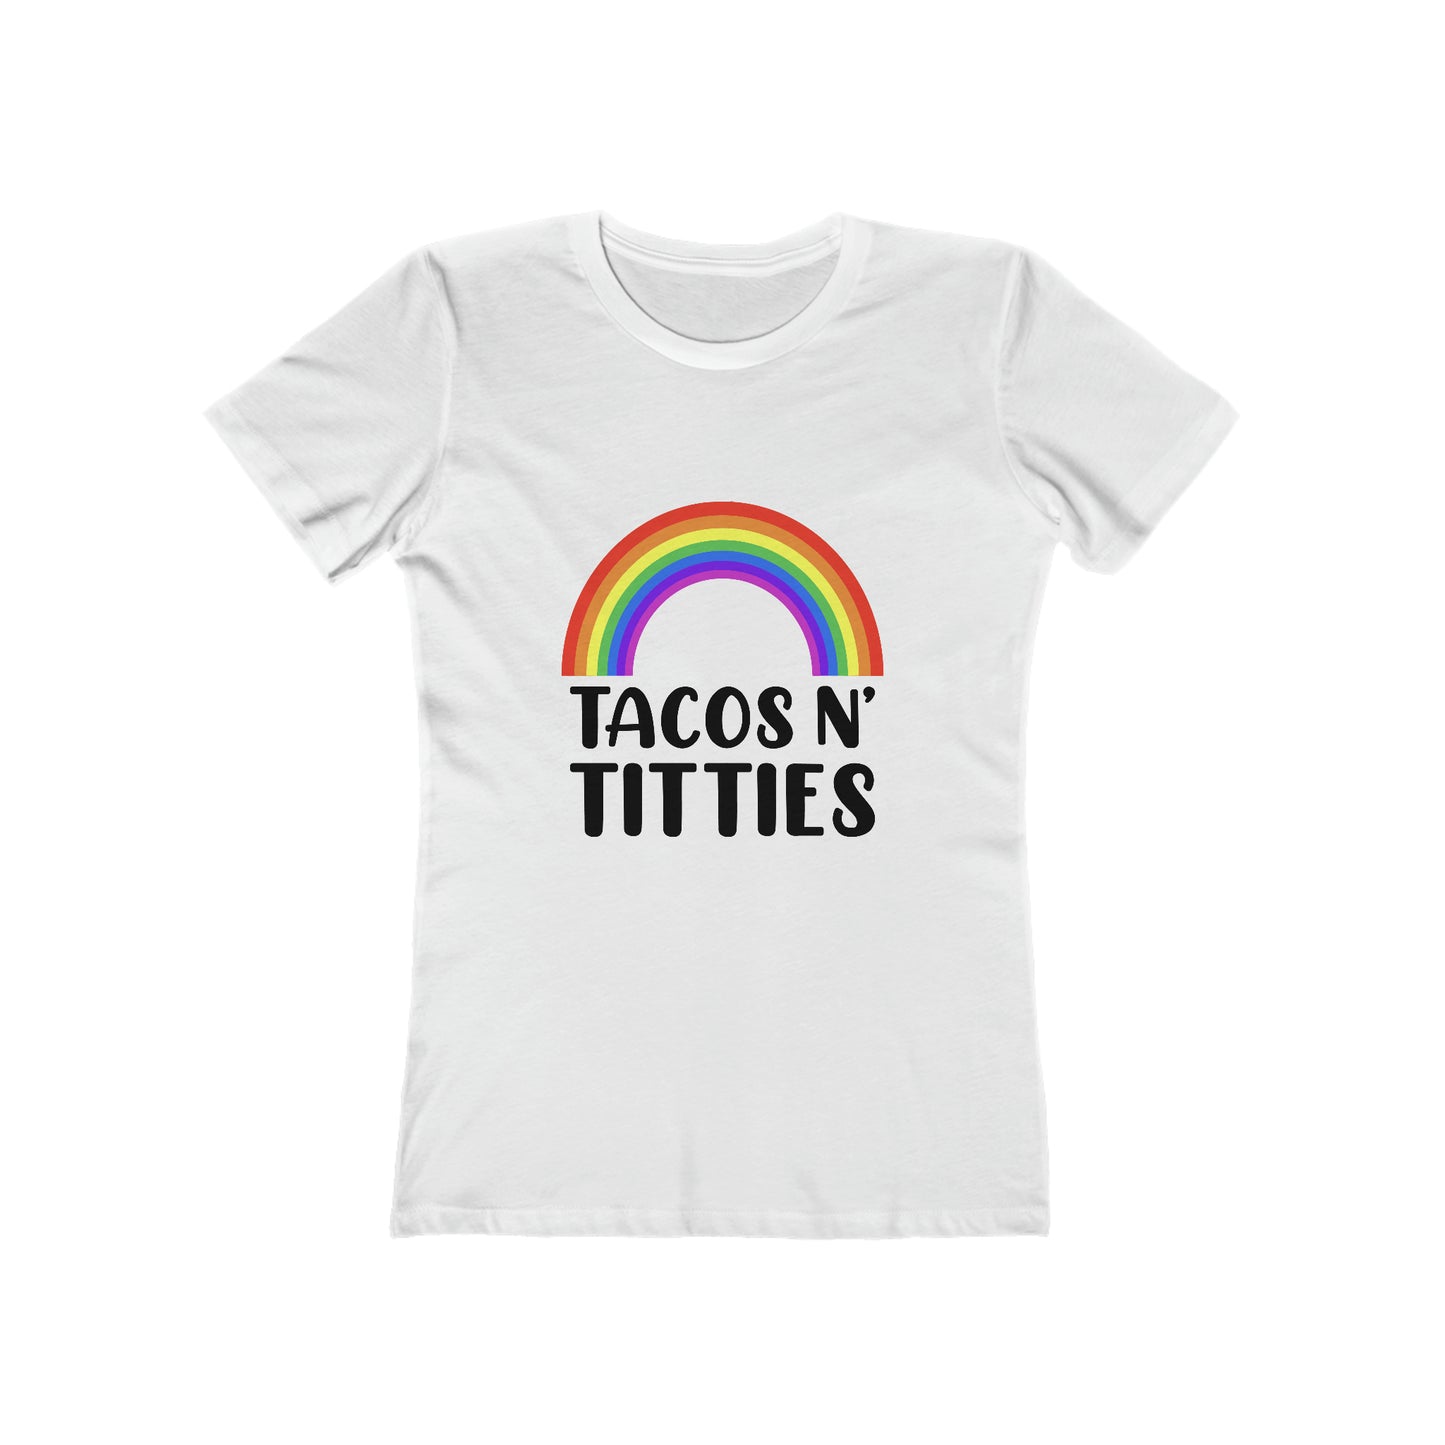 Tacos N Titties - Women's T-shirt